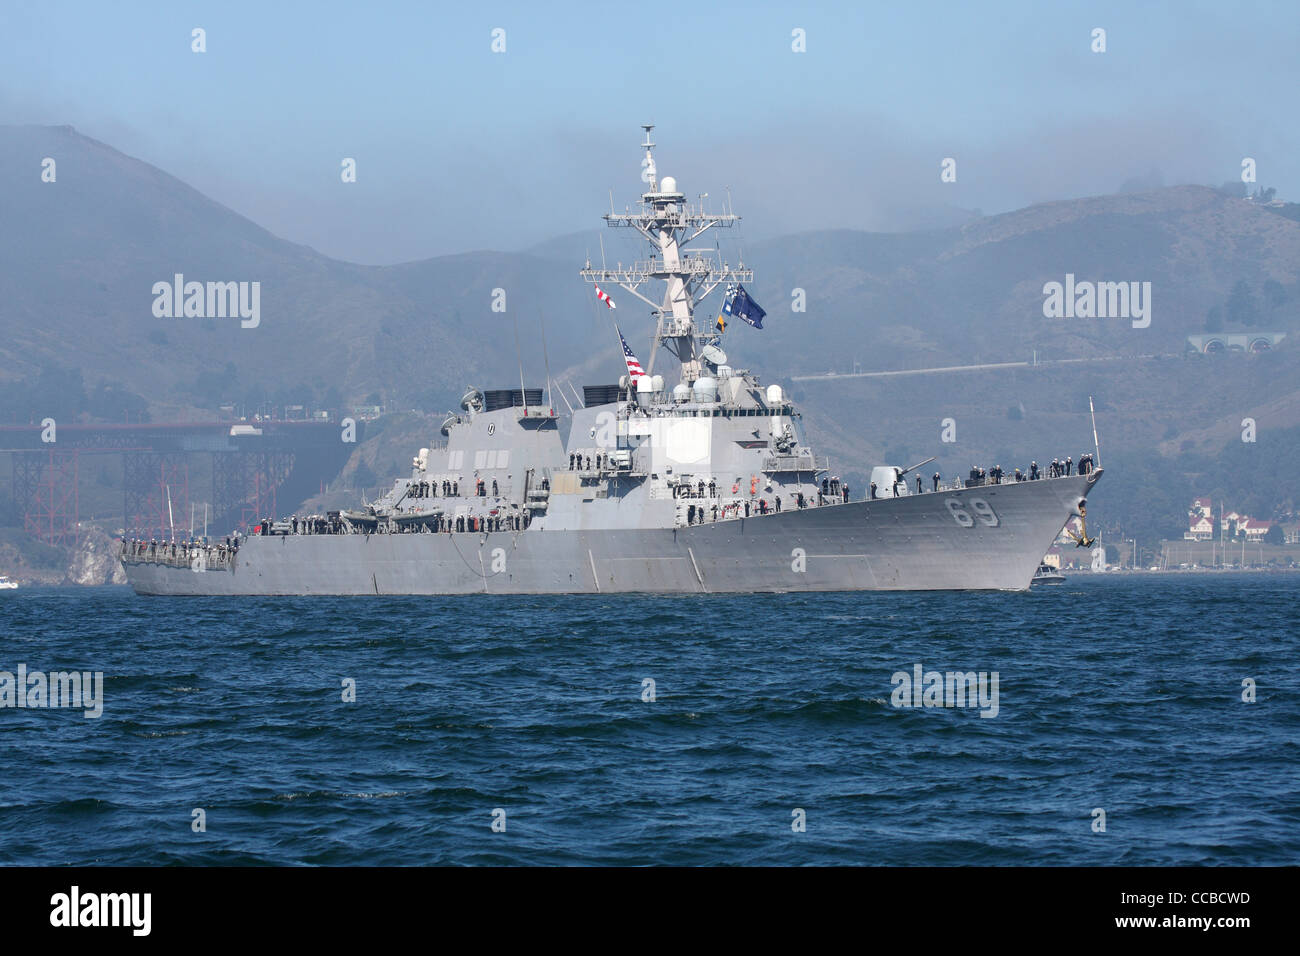 Aegis de la classe Arleigh Burke destroyer lance-missiles USS Milius (DDG-69) entre dans la baie de San Francisco. Banque D'Images